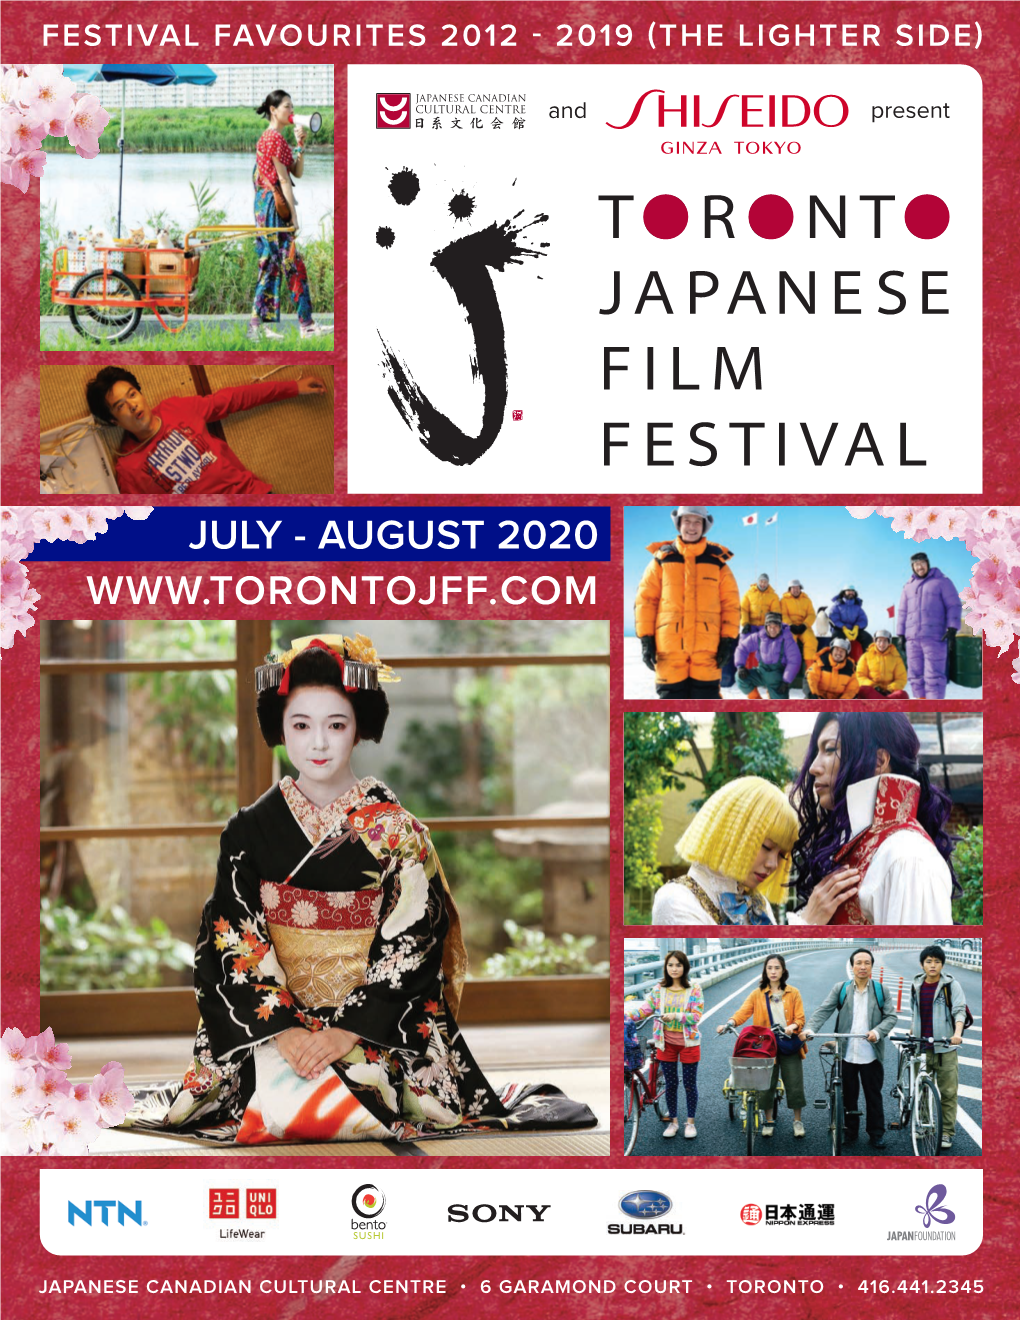 Best of the Toronto Japanese Film Festival (The Lighter Side)